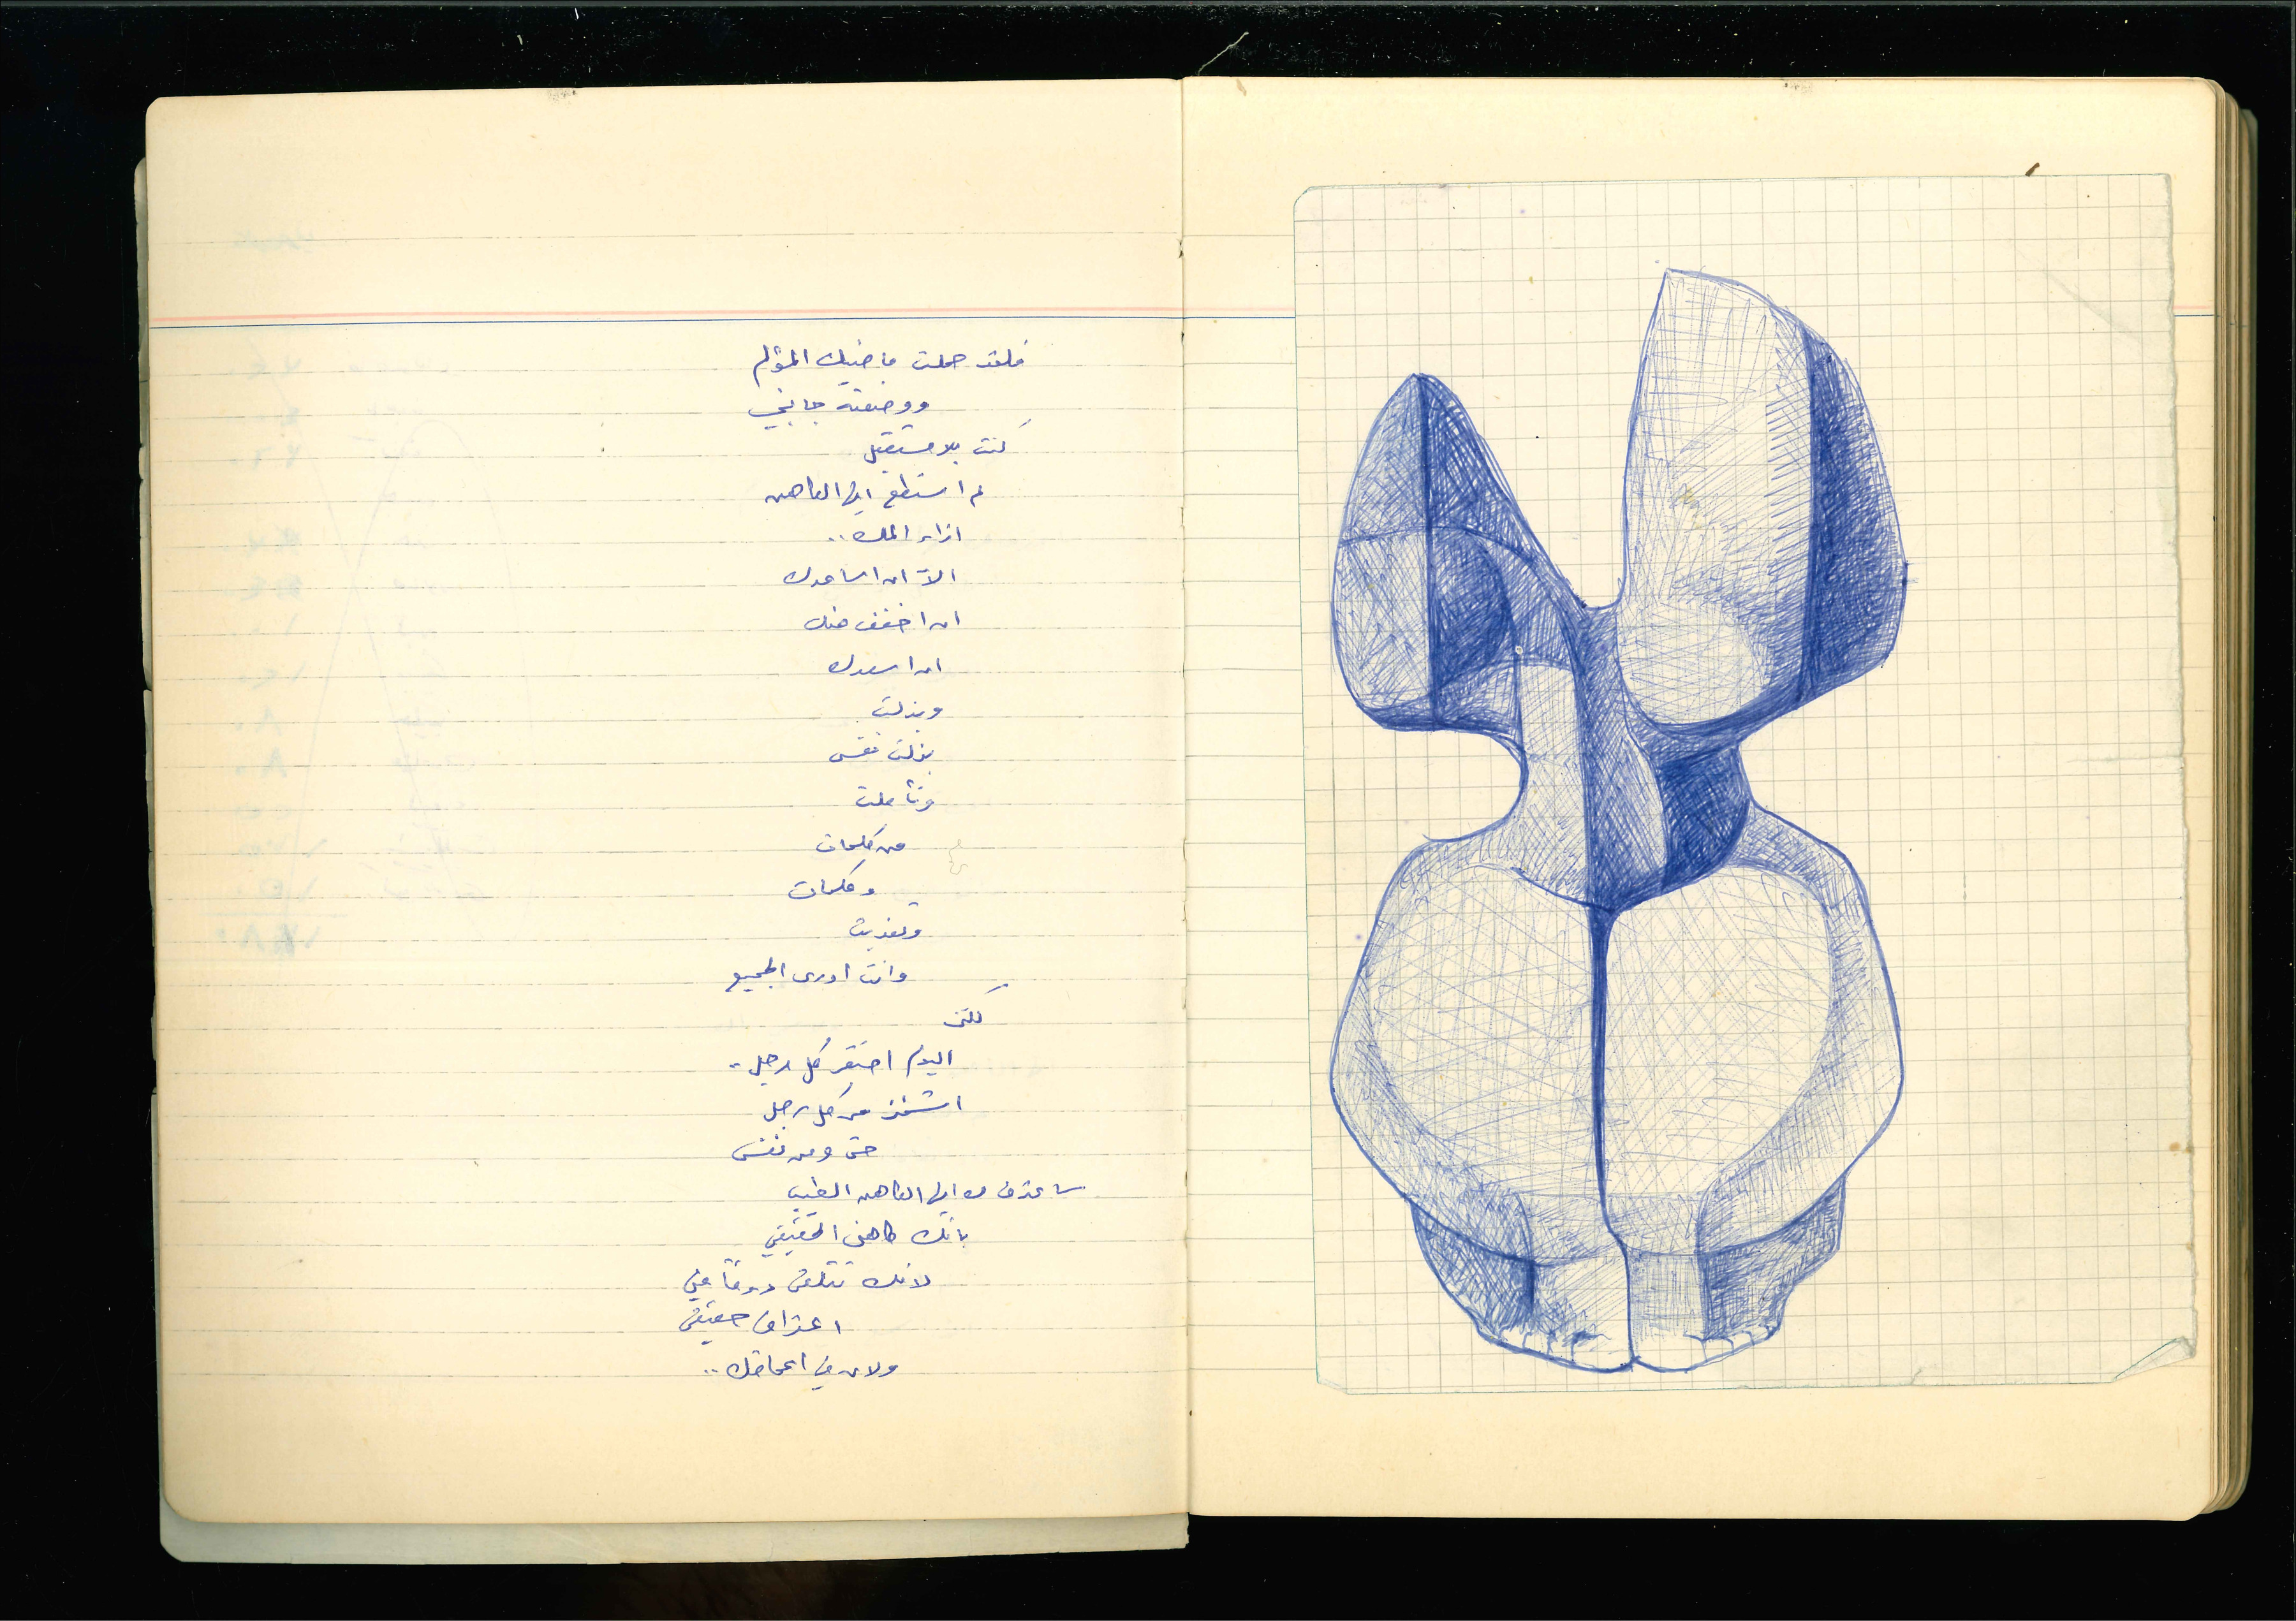 أرشيف ليلى نصير - مجموعات أرشيفية - Atassi Foundation